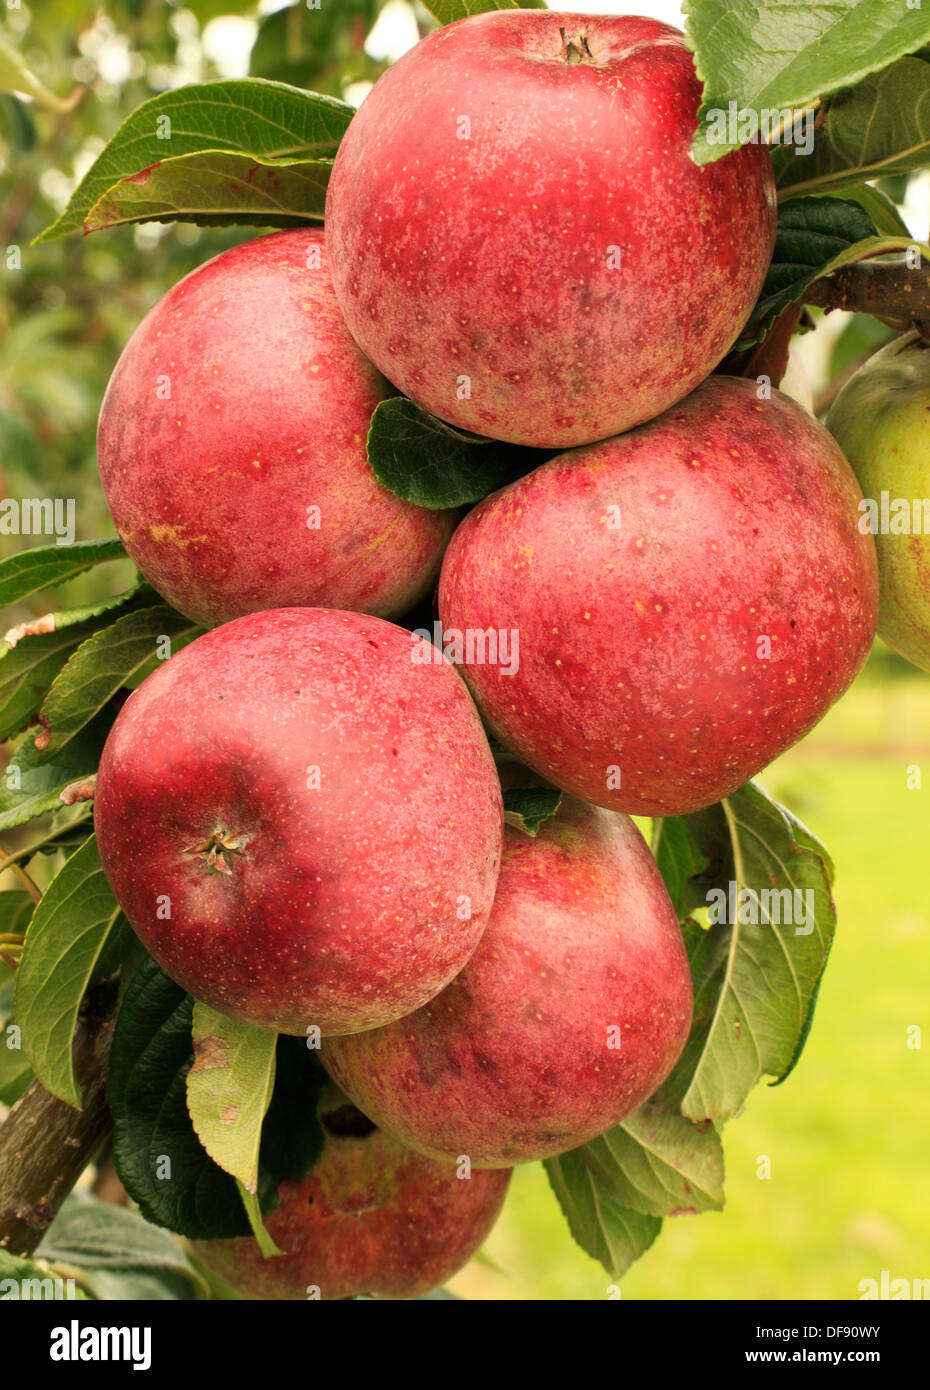 Apple, Ríos San Martins, variedad crecen en árboles frutales, manzanas rojas Inglaterra Foto de stock